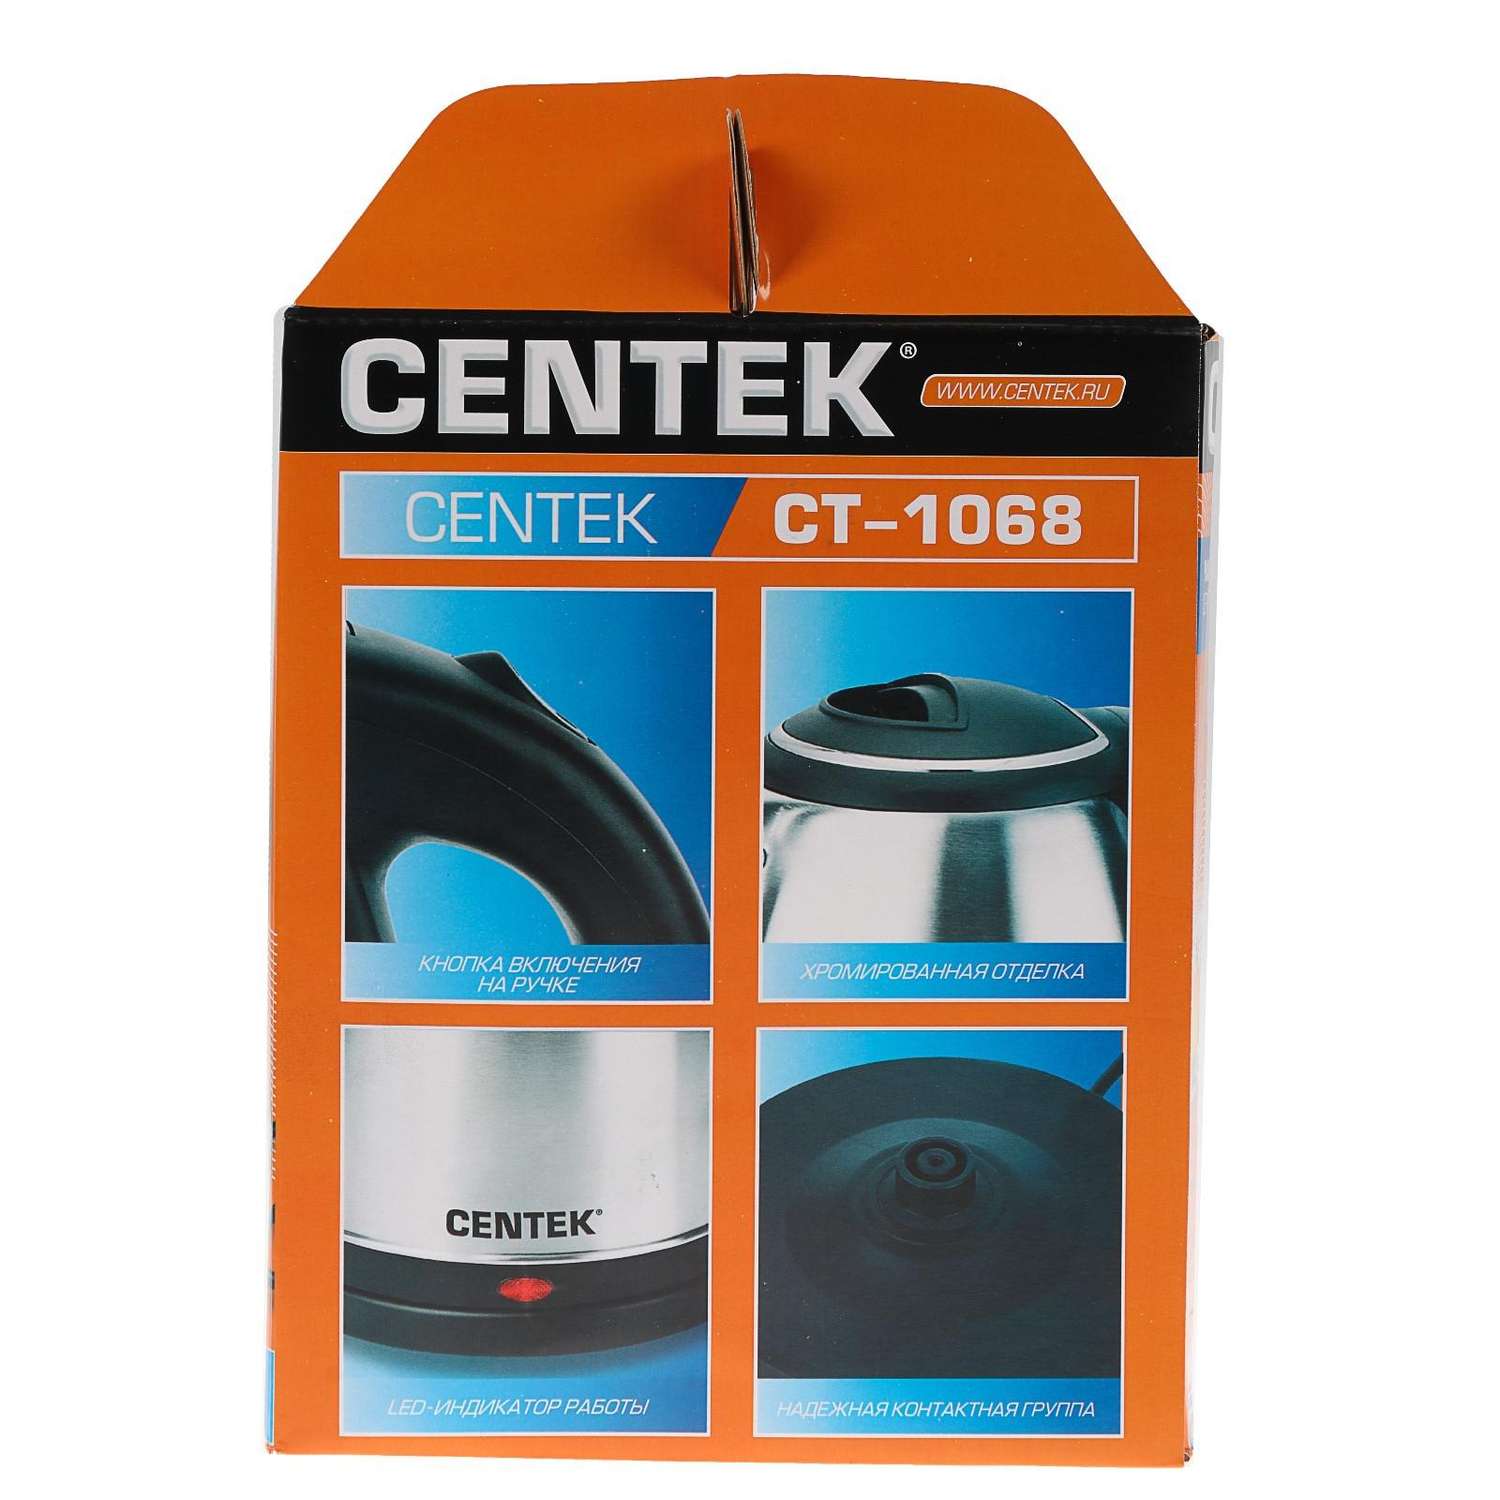 Чайник CENTEK электрический CT-1068 металл 2 л 2000 Вт серебристый - фото 11